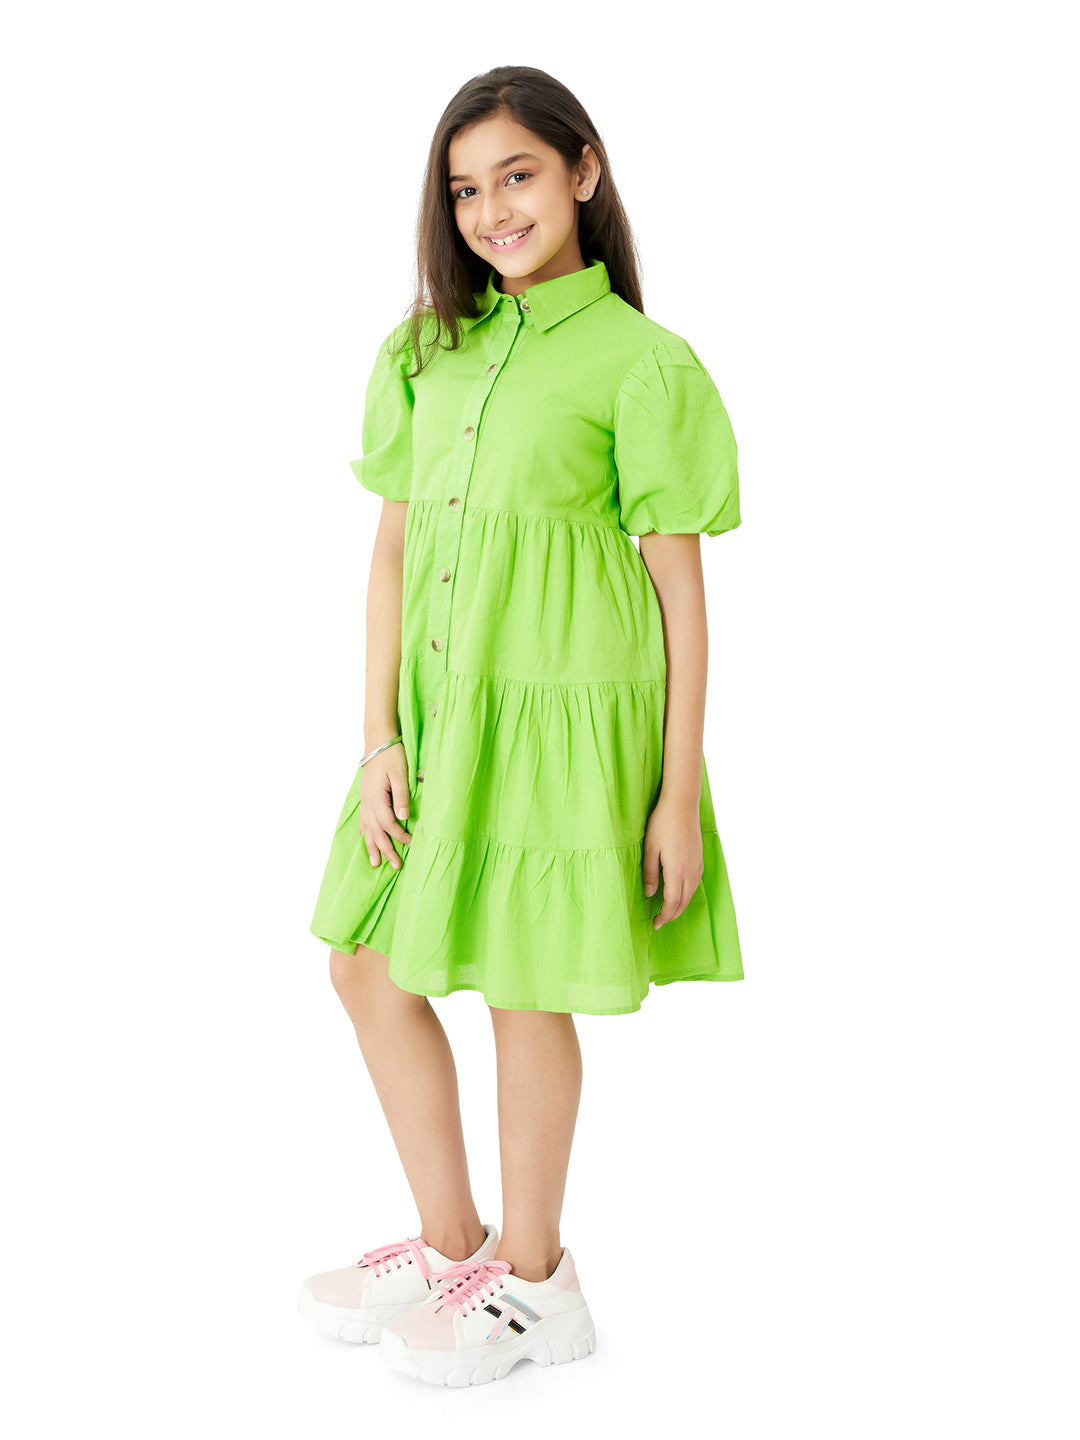 Green Cotton Dress for Girls Kids